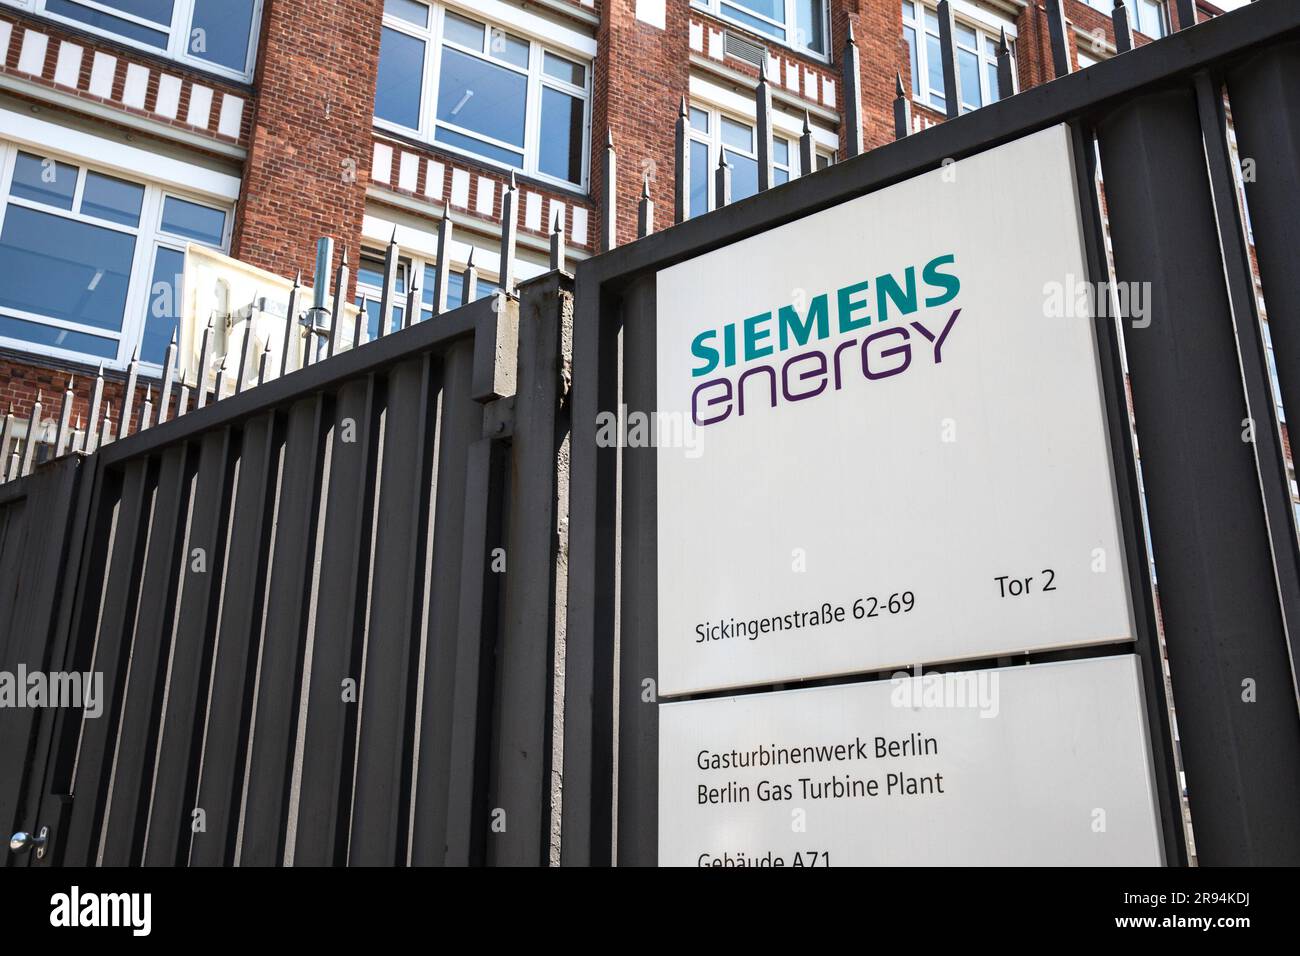 Berlin, Deutschland. 24. Juni 2023. Das Siemens Energy-Gebäude in Berlin am 24. Juni 2023. Die Aktien von Siemens Energy sind aufgrund unerwarteter Qualitätsprobleme bei Siemens Gamesa um 37,3 % gesunken, was dazu geführt hat, dass das Unternehmen seine jährliche Gewinnprognose zurückzieht. Die Investoren sind besorgt über die Auswirkungen langwieriger Straffungszyklen auf die globale wirtschaftliche Erholung. Das Wachstum der Unternehmen in der Eurozone stagnierte im Juni, und die deutsche Geschäftstätigkeit verlangsamte sich in diesem Monat deutlich. (Kreditbild: © Michael Kuenne/PRESSCOV via ZUMA Press Wire) NUR REDAKTIONELLE VERWENDUNG! Nicht für den kommerziellen GEBRAUCH! Stockfoto